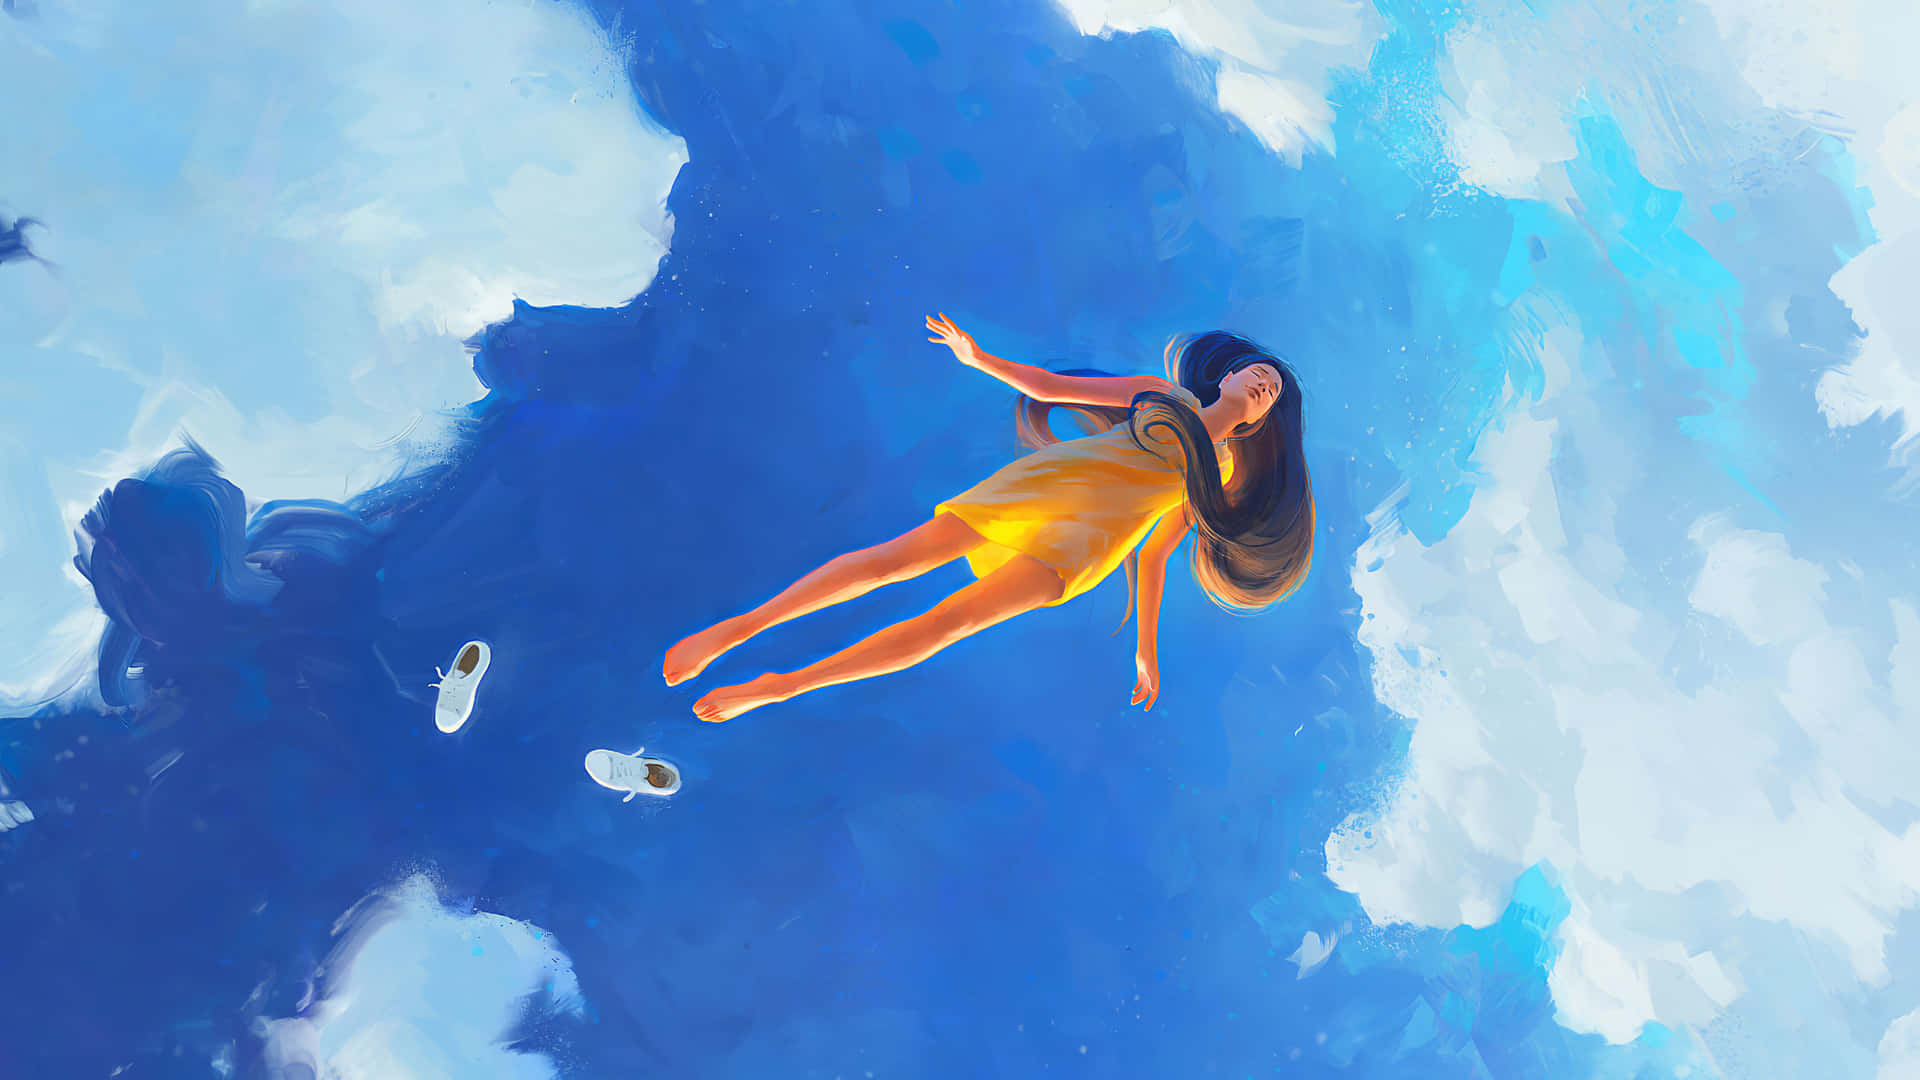 Mulherflutuando Em Um Céu Azul Em Uma Imagem Relaxante.